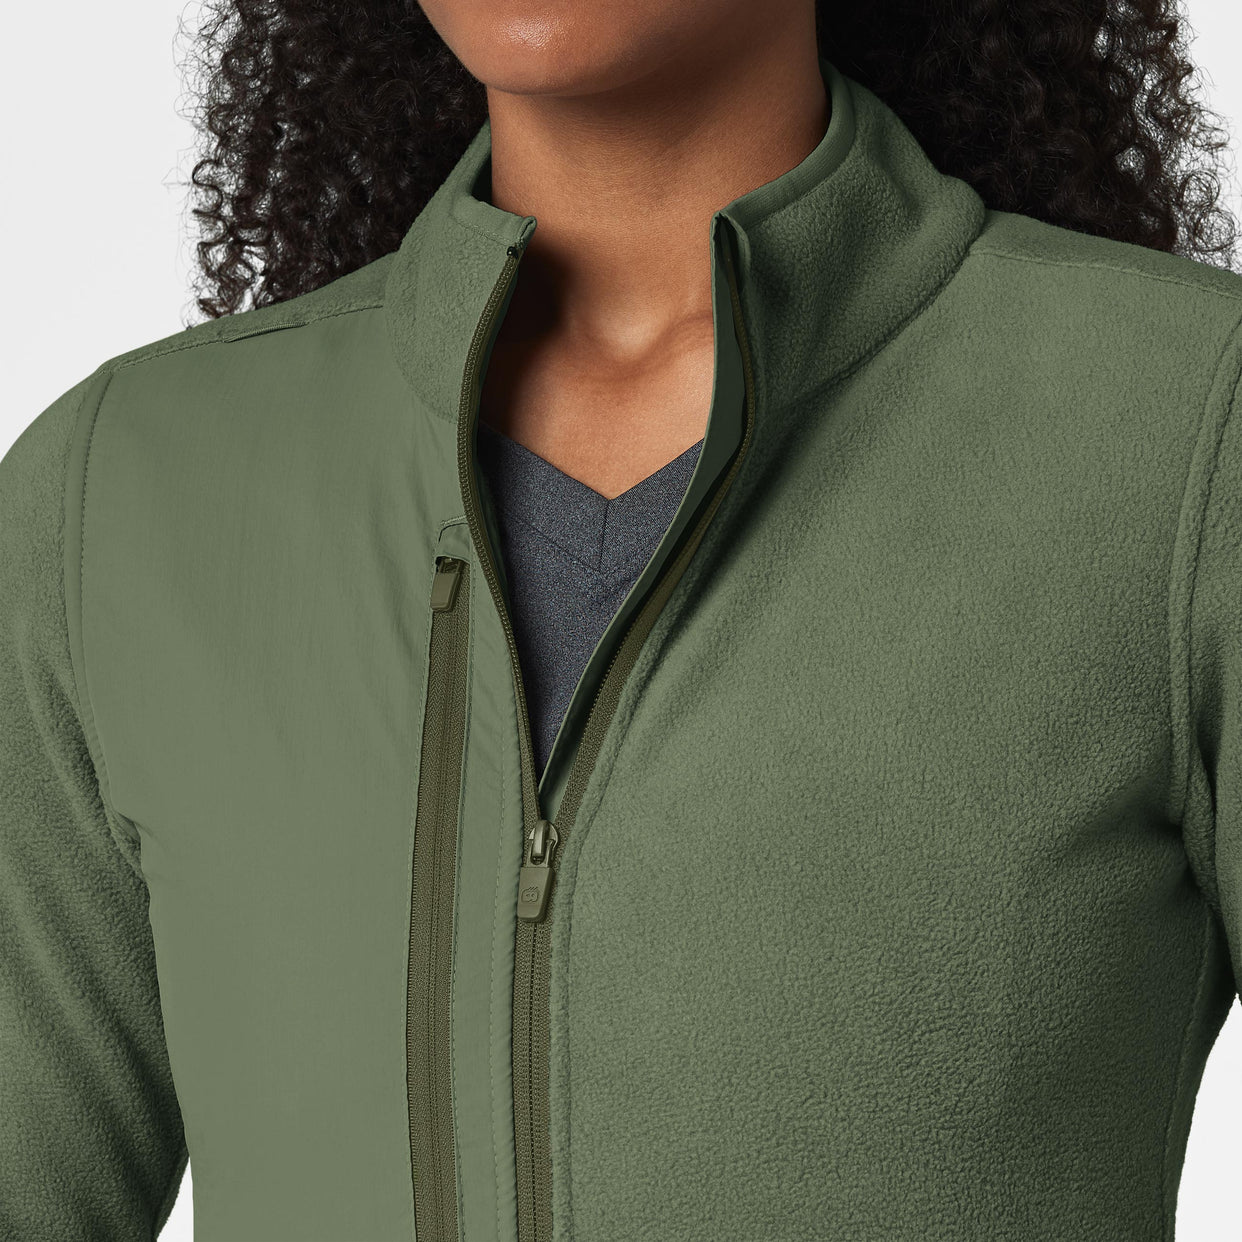 Slate Women's Micro Fleece Zip Jacket Olive side detail 1